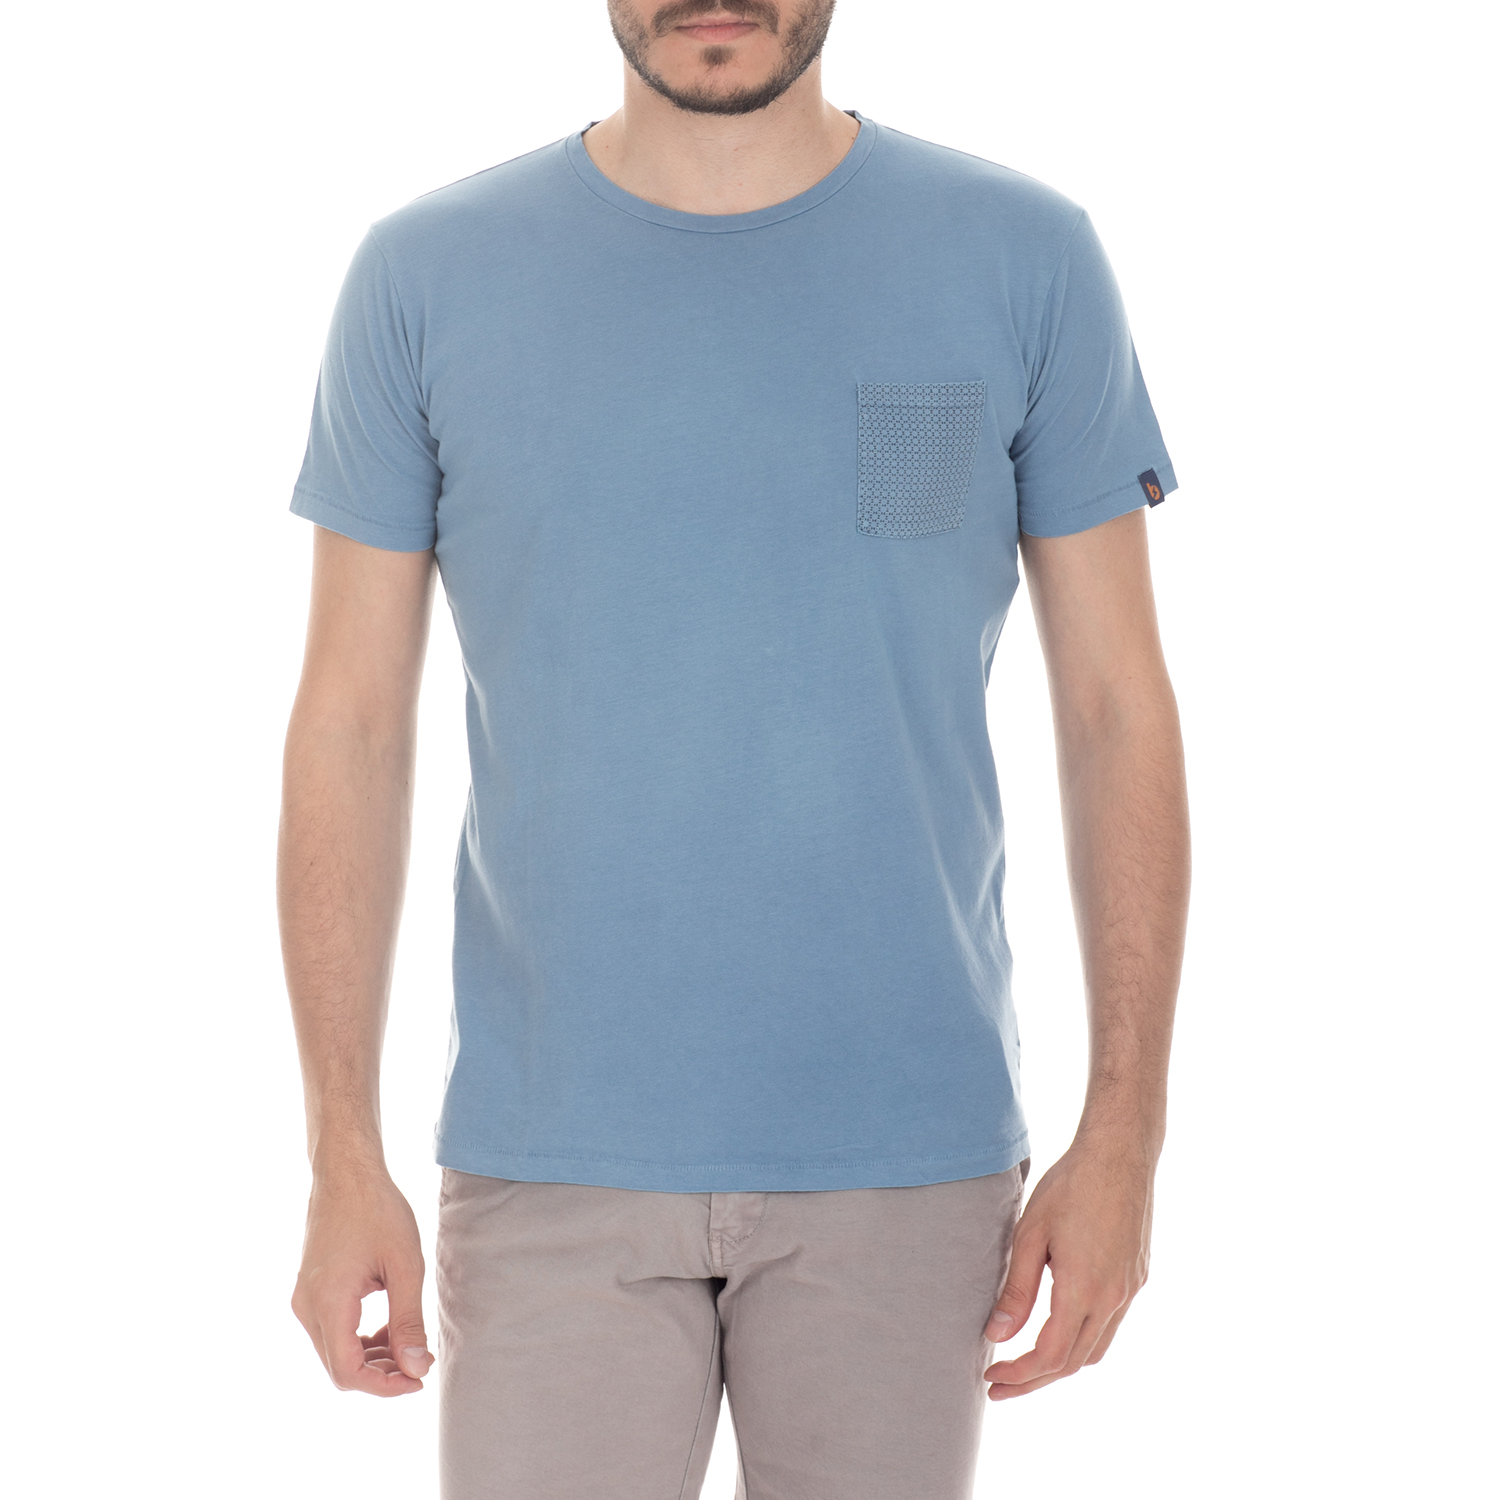 Ανδρικά/Ρούχα/Μπλούζες/Κοντομάνικες BATTERY - Ανδρική μπλούζα BATTERY μπλε